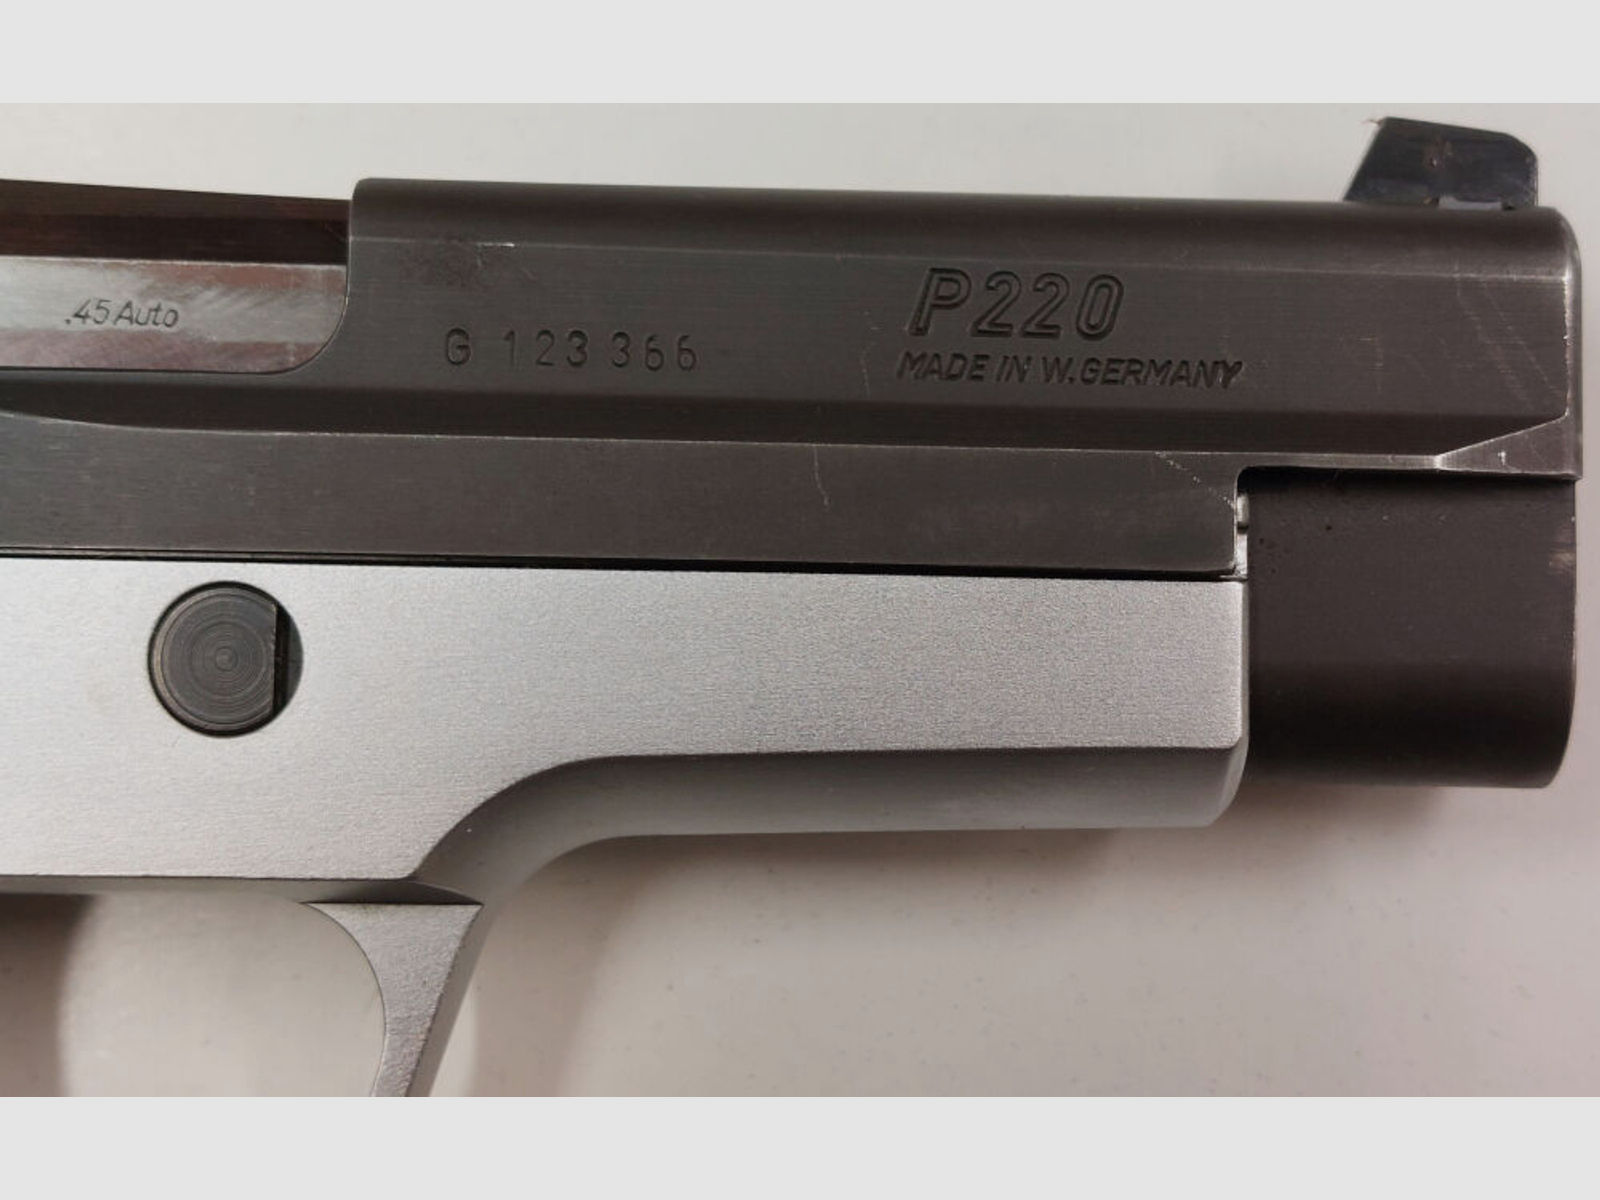 SIG SAUER	 DEFEKT Halbautom. Pistole SIG SAUER P220 Bicolor Schwarz/Silber im Kaliber .45ACP